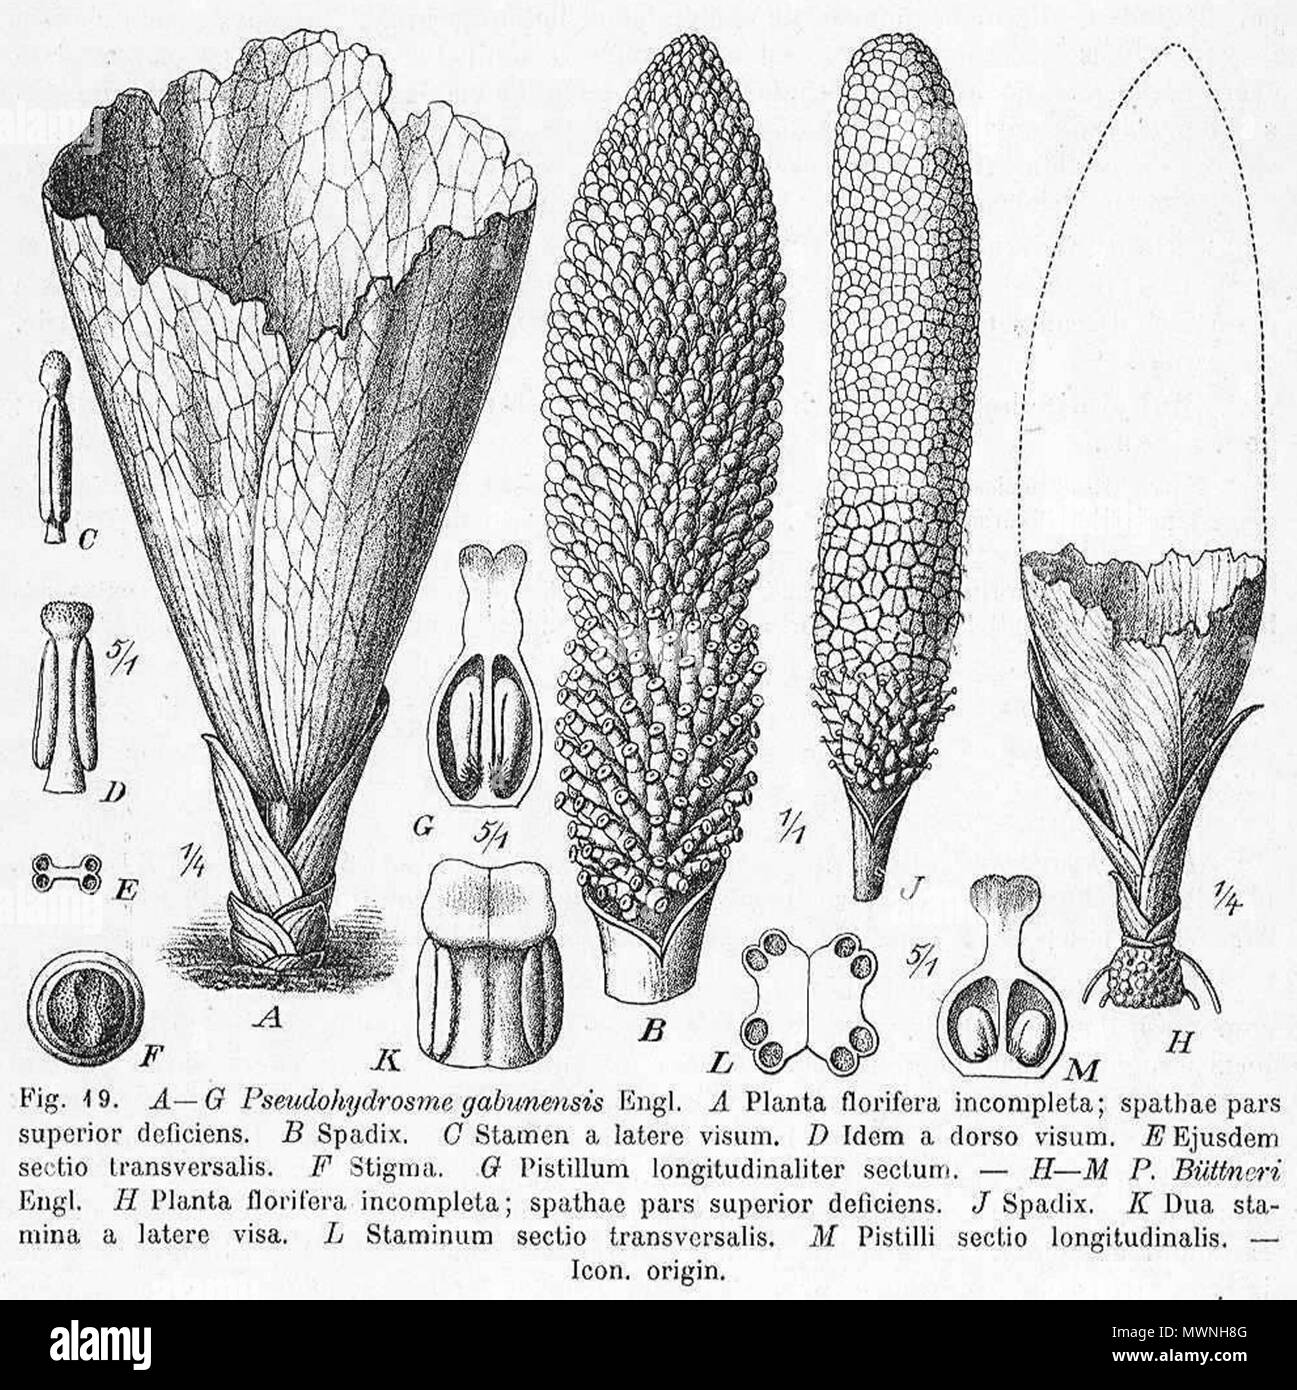 . English: Pseudohydrosme gabunensis botanical drawing of Adolf Engler . 1920. Adolf Engler (d. 1930) 505 Pseudohydrosme gabunensis Engler drawing Stock Photo